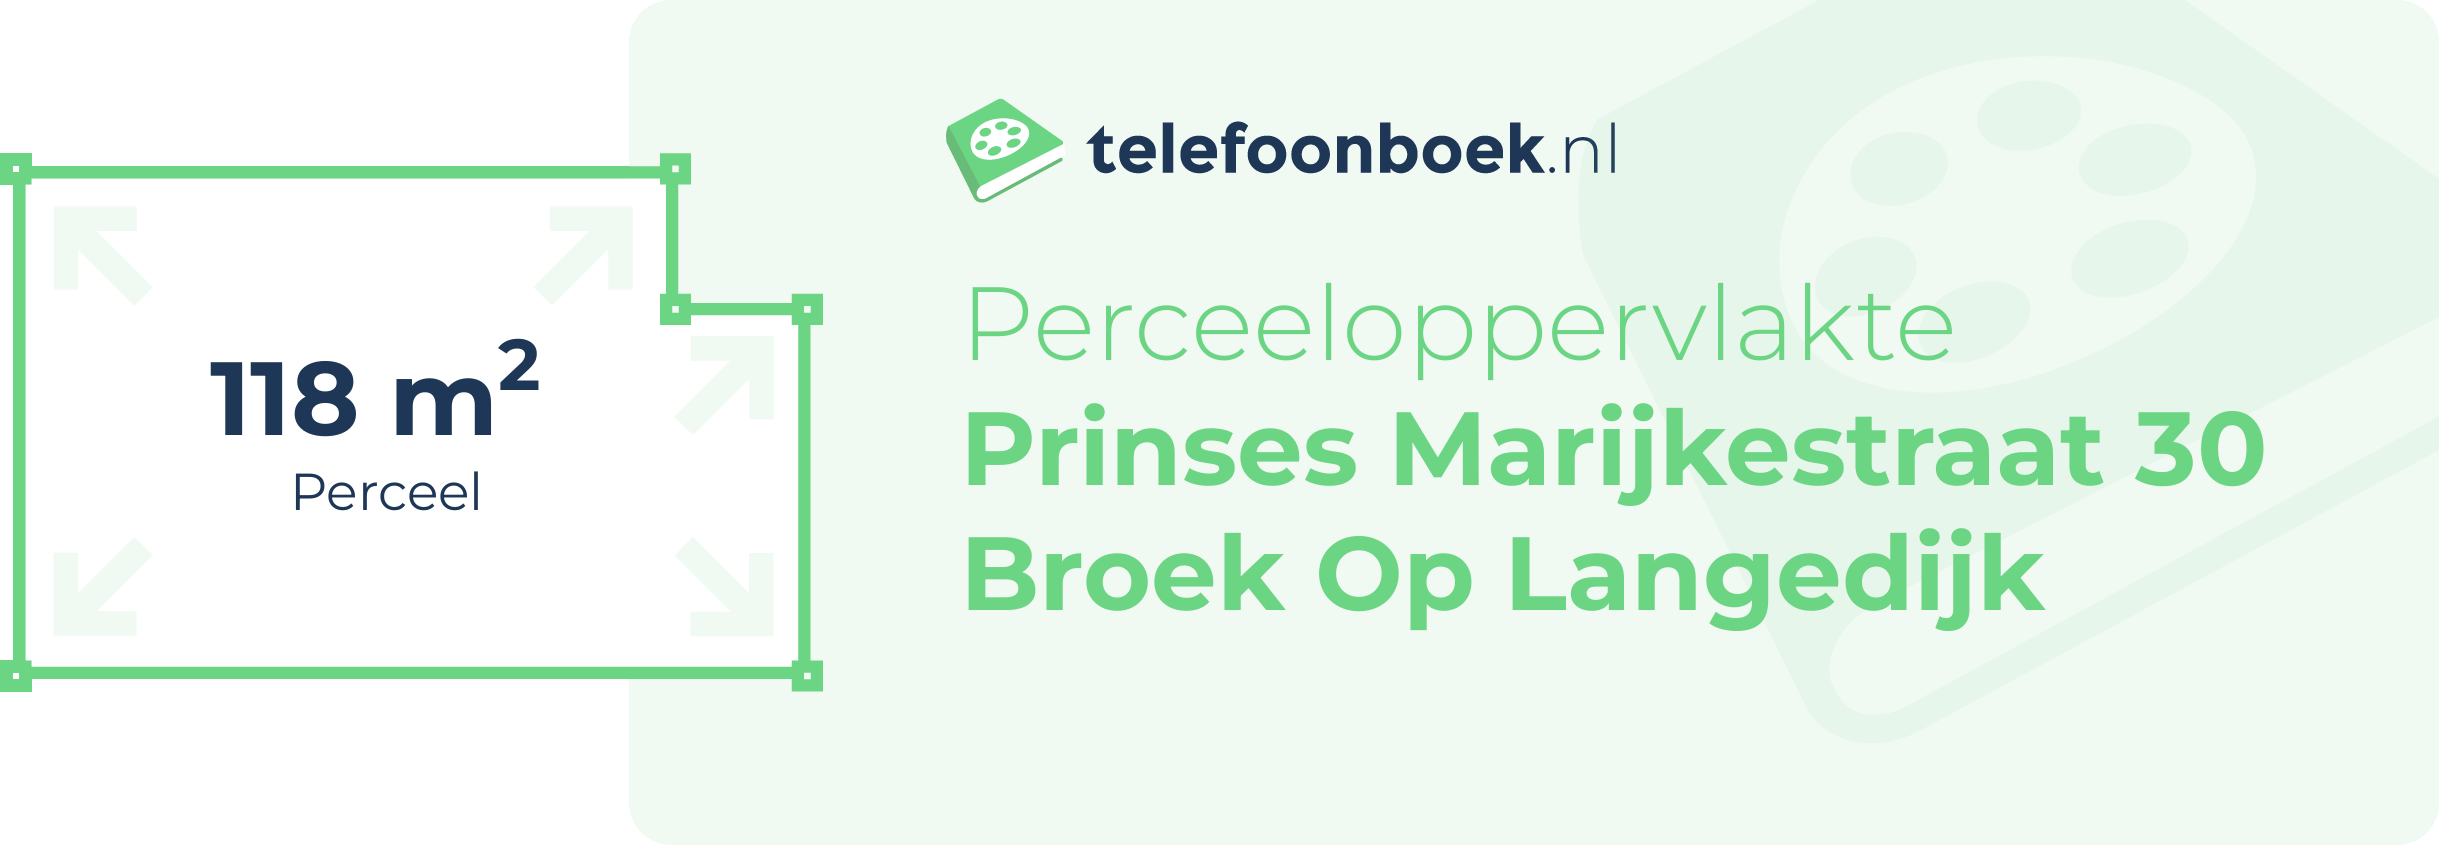 Perceeloppervlakte Prinses Marijkestraat 30 Broek Op Langedijk